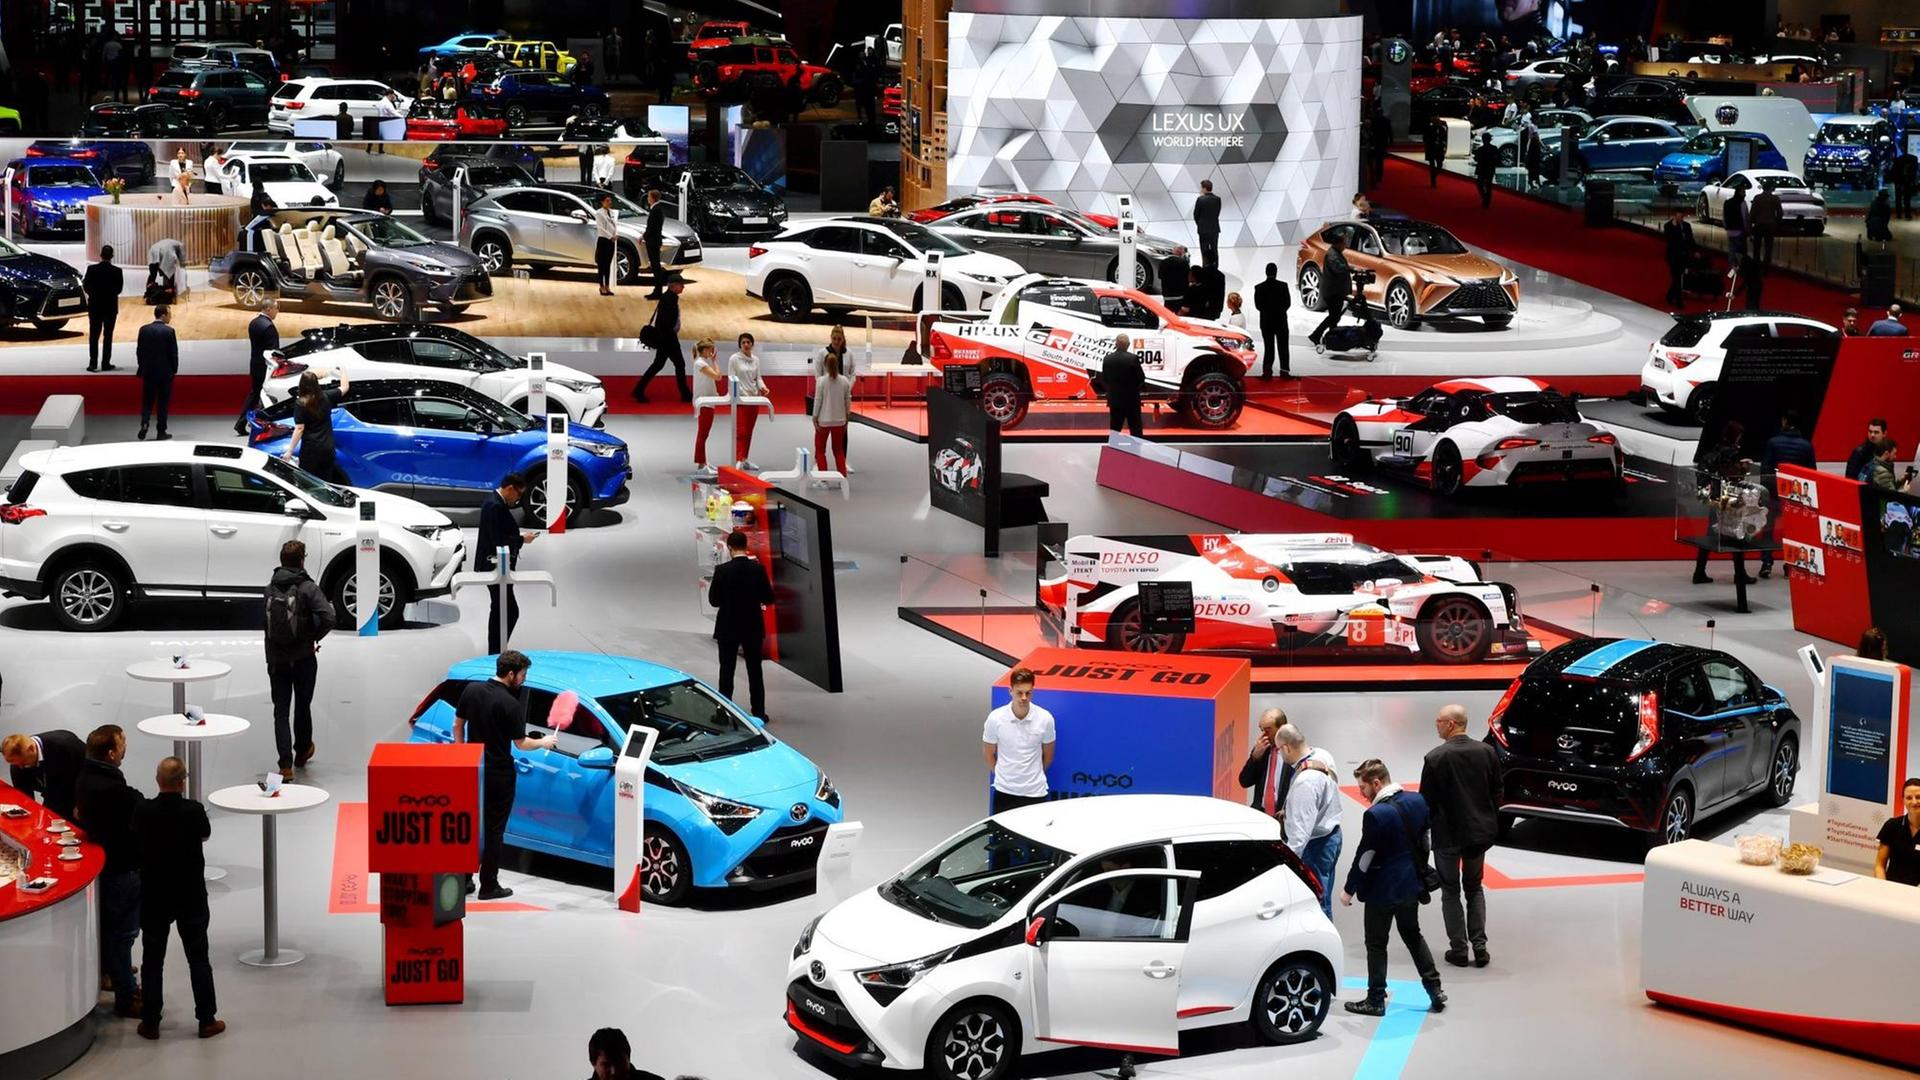 Auf dem Internationalen Autosalon in Genf zeigen verschiedene Hersteller ihre neuen Modelle